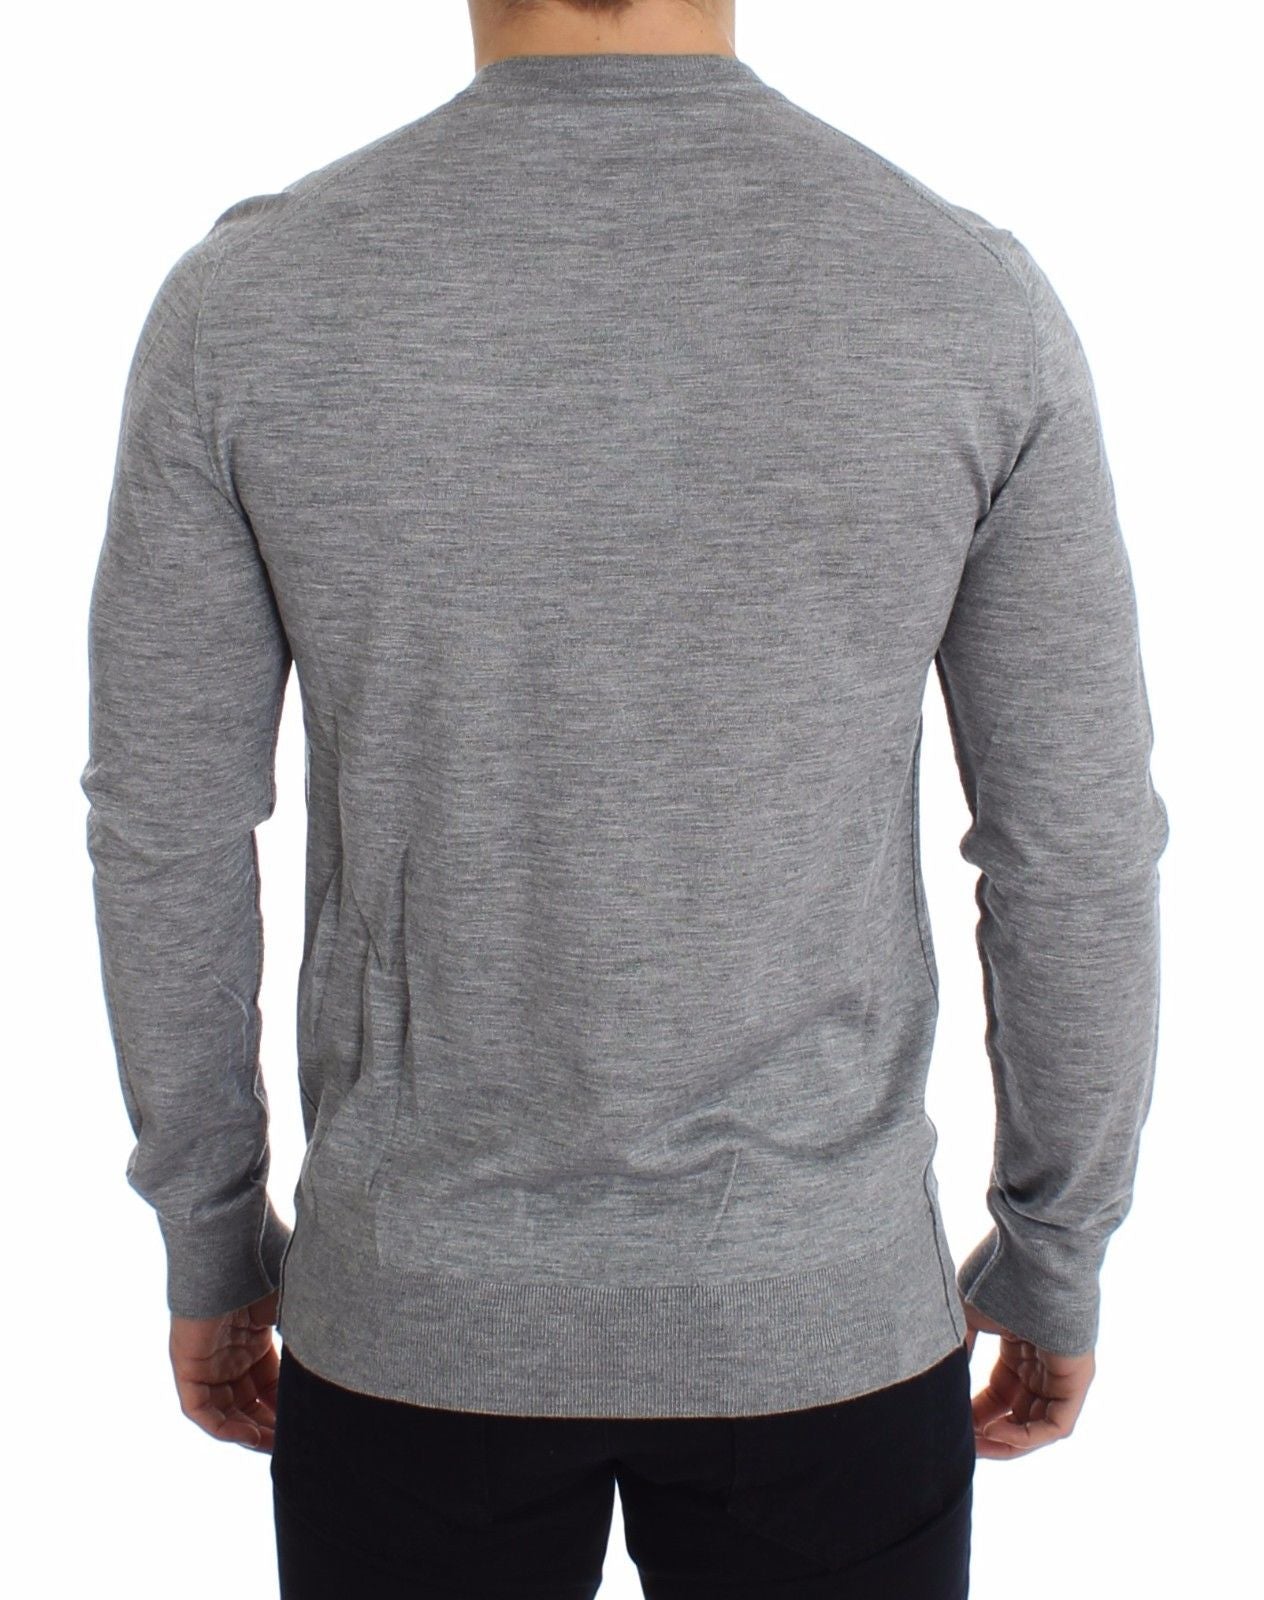 Gray Silk Cashmere V-neck Sweater Pullover